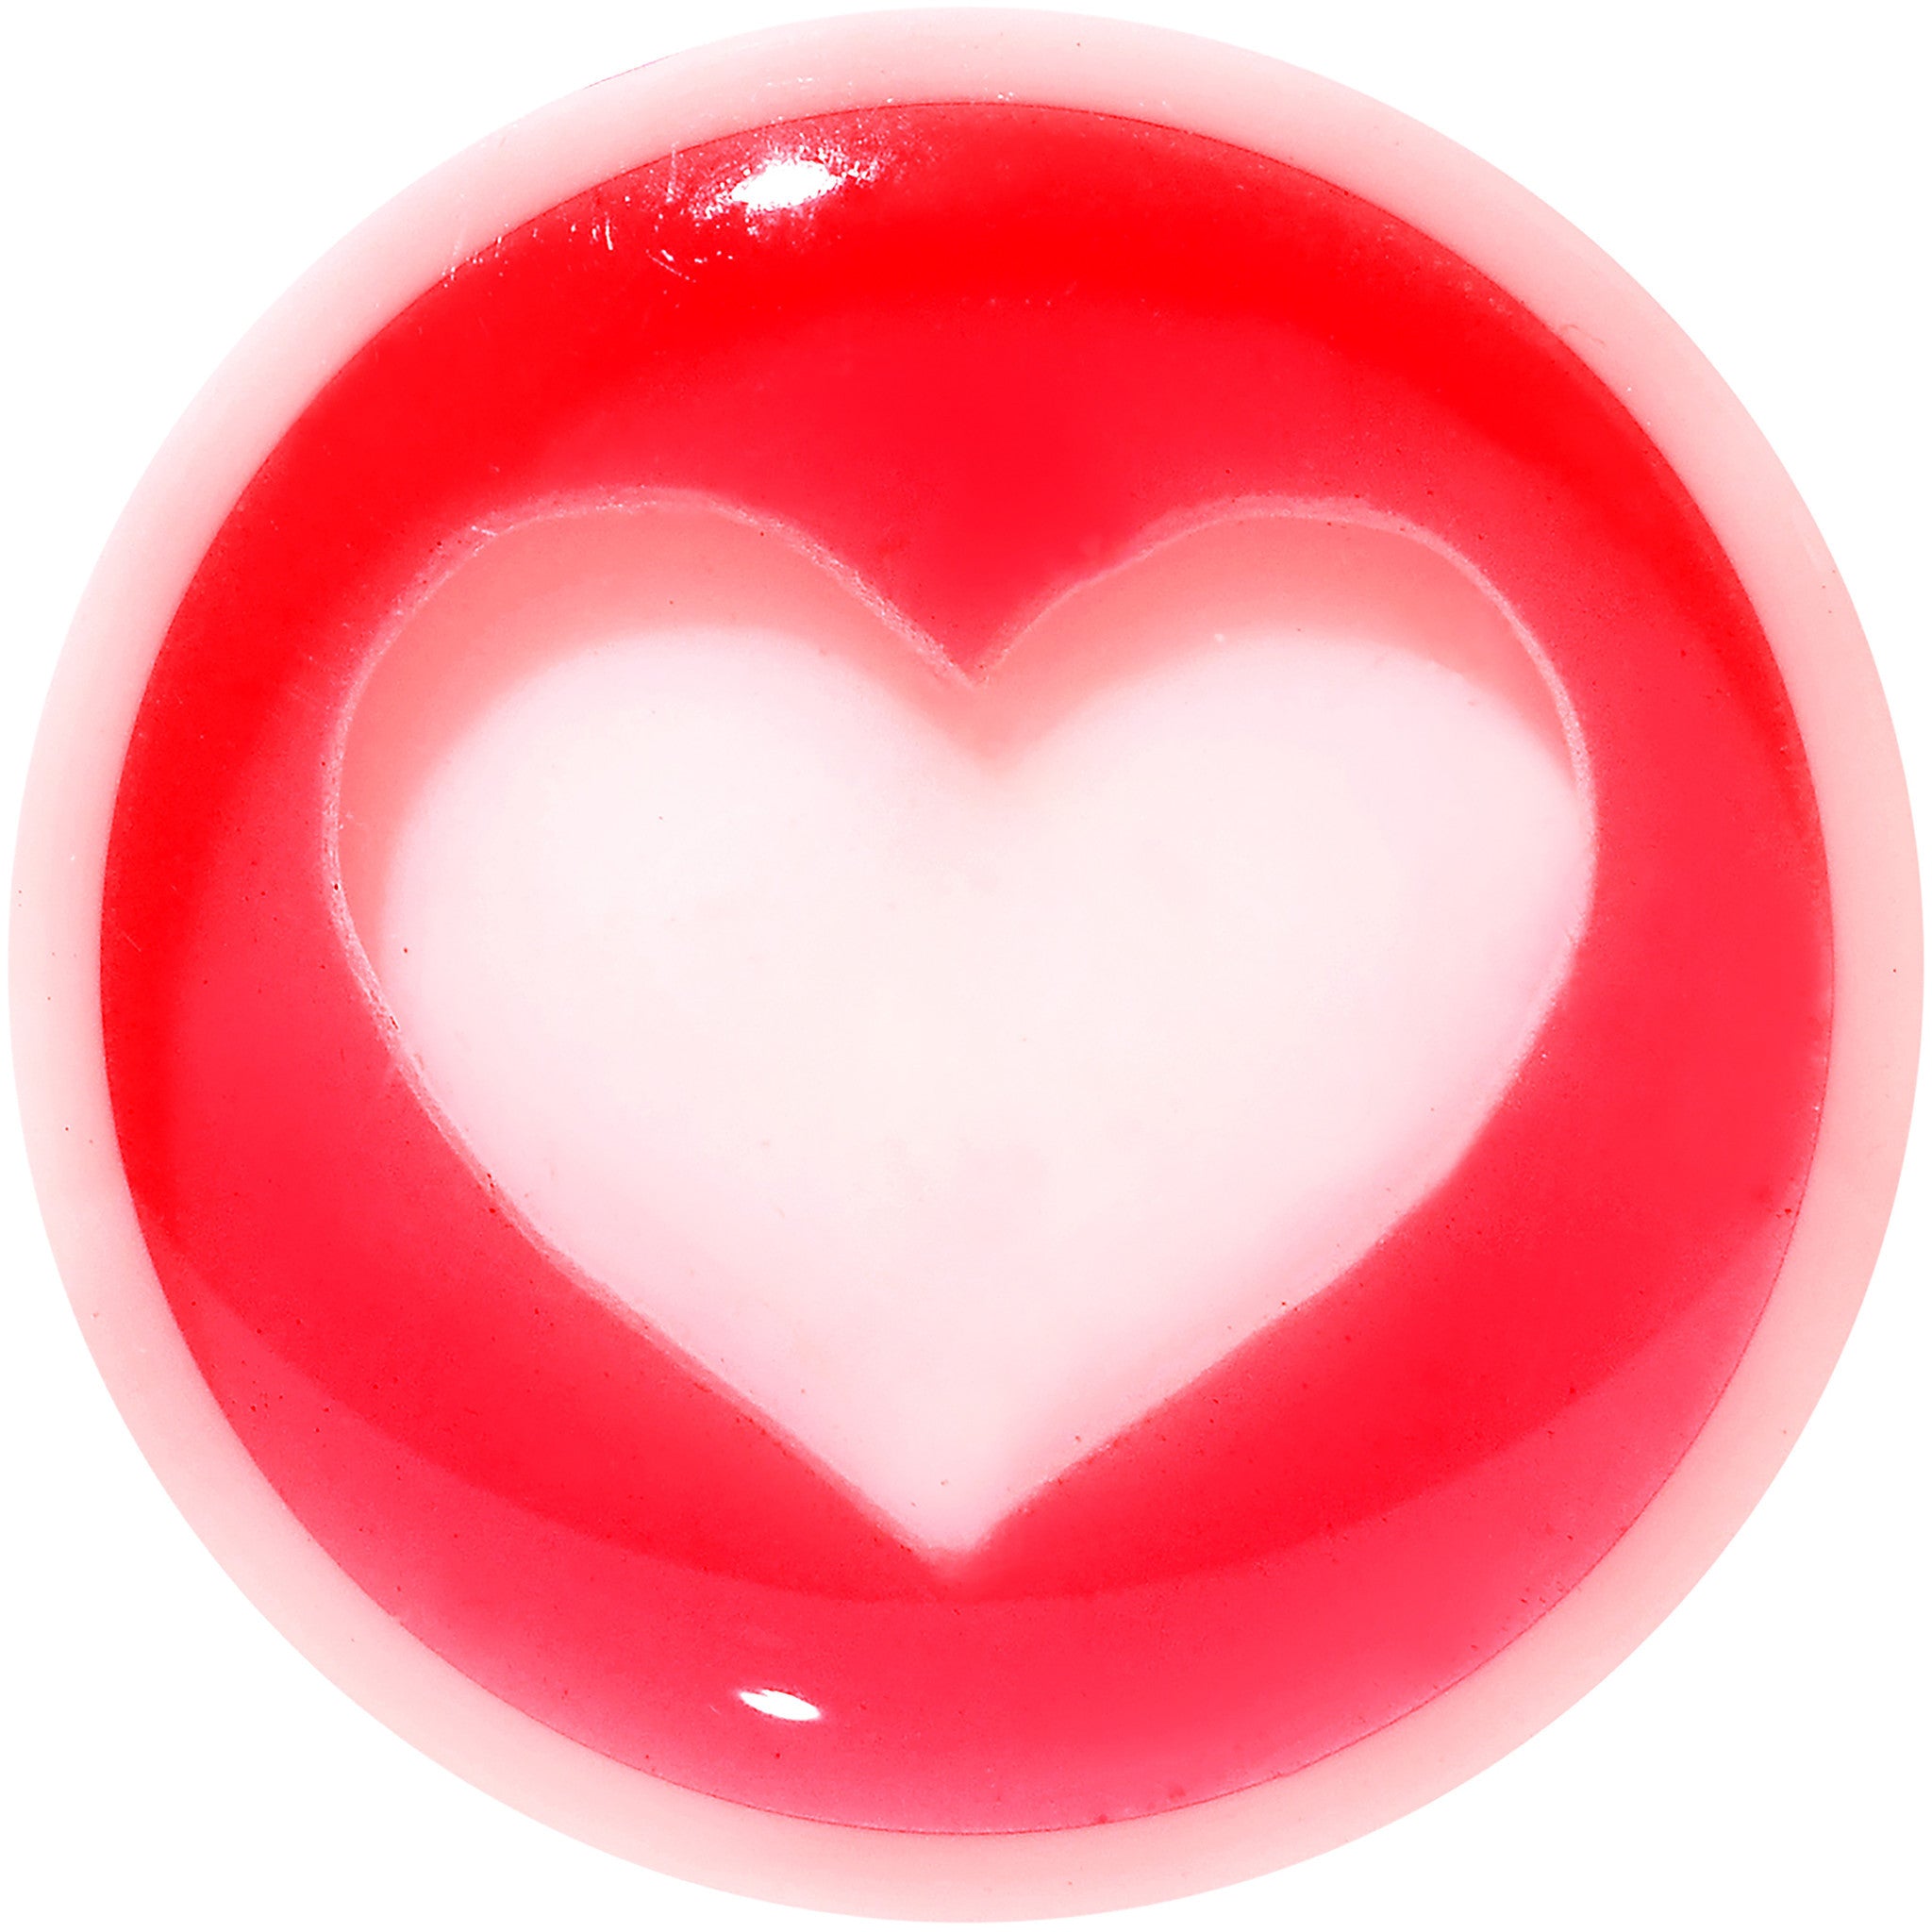 1/2 White Red Acrylic Adoring Heart Saddle Plug